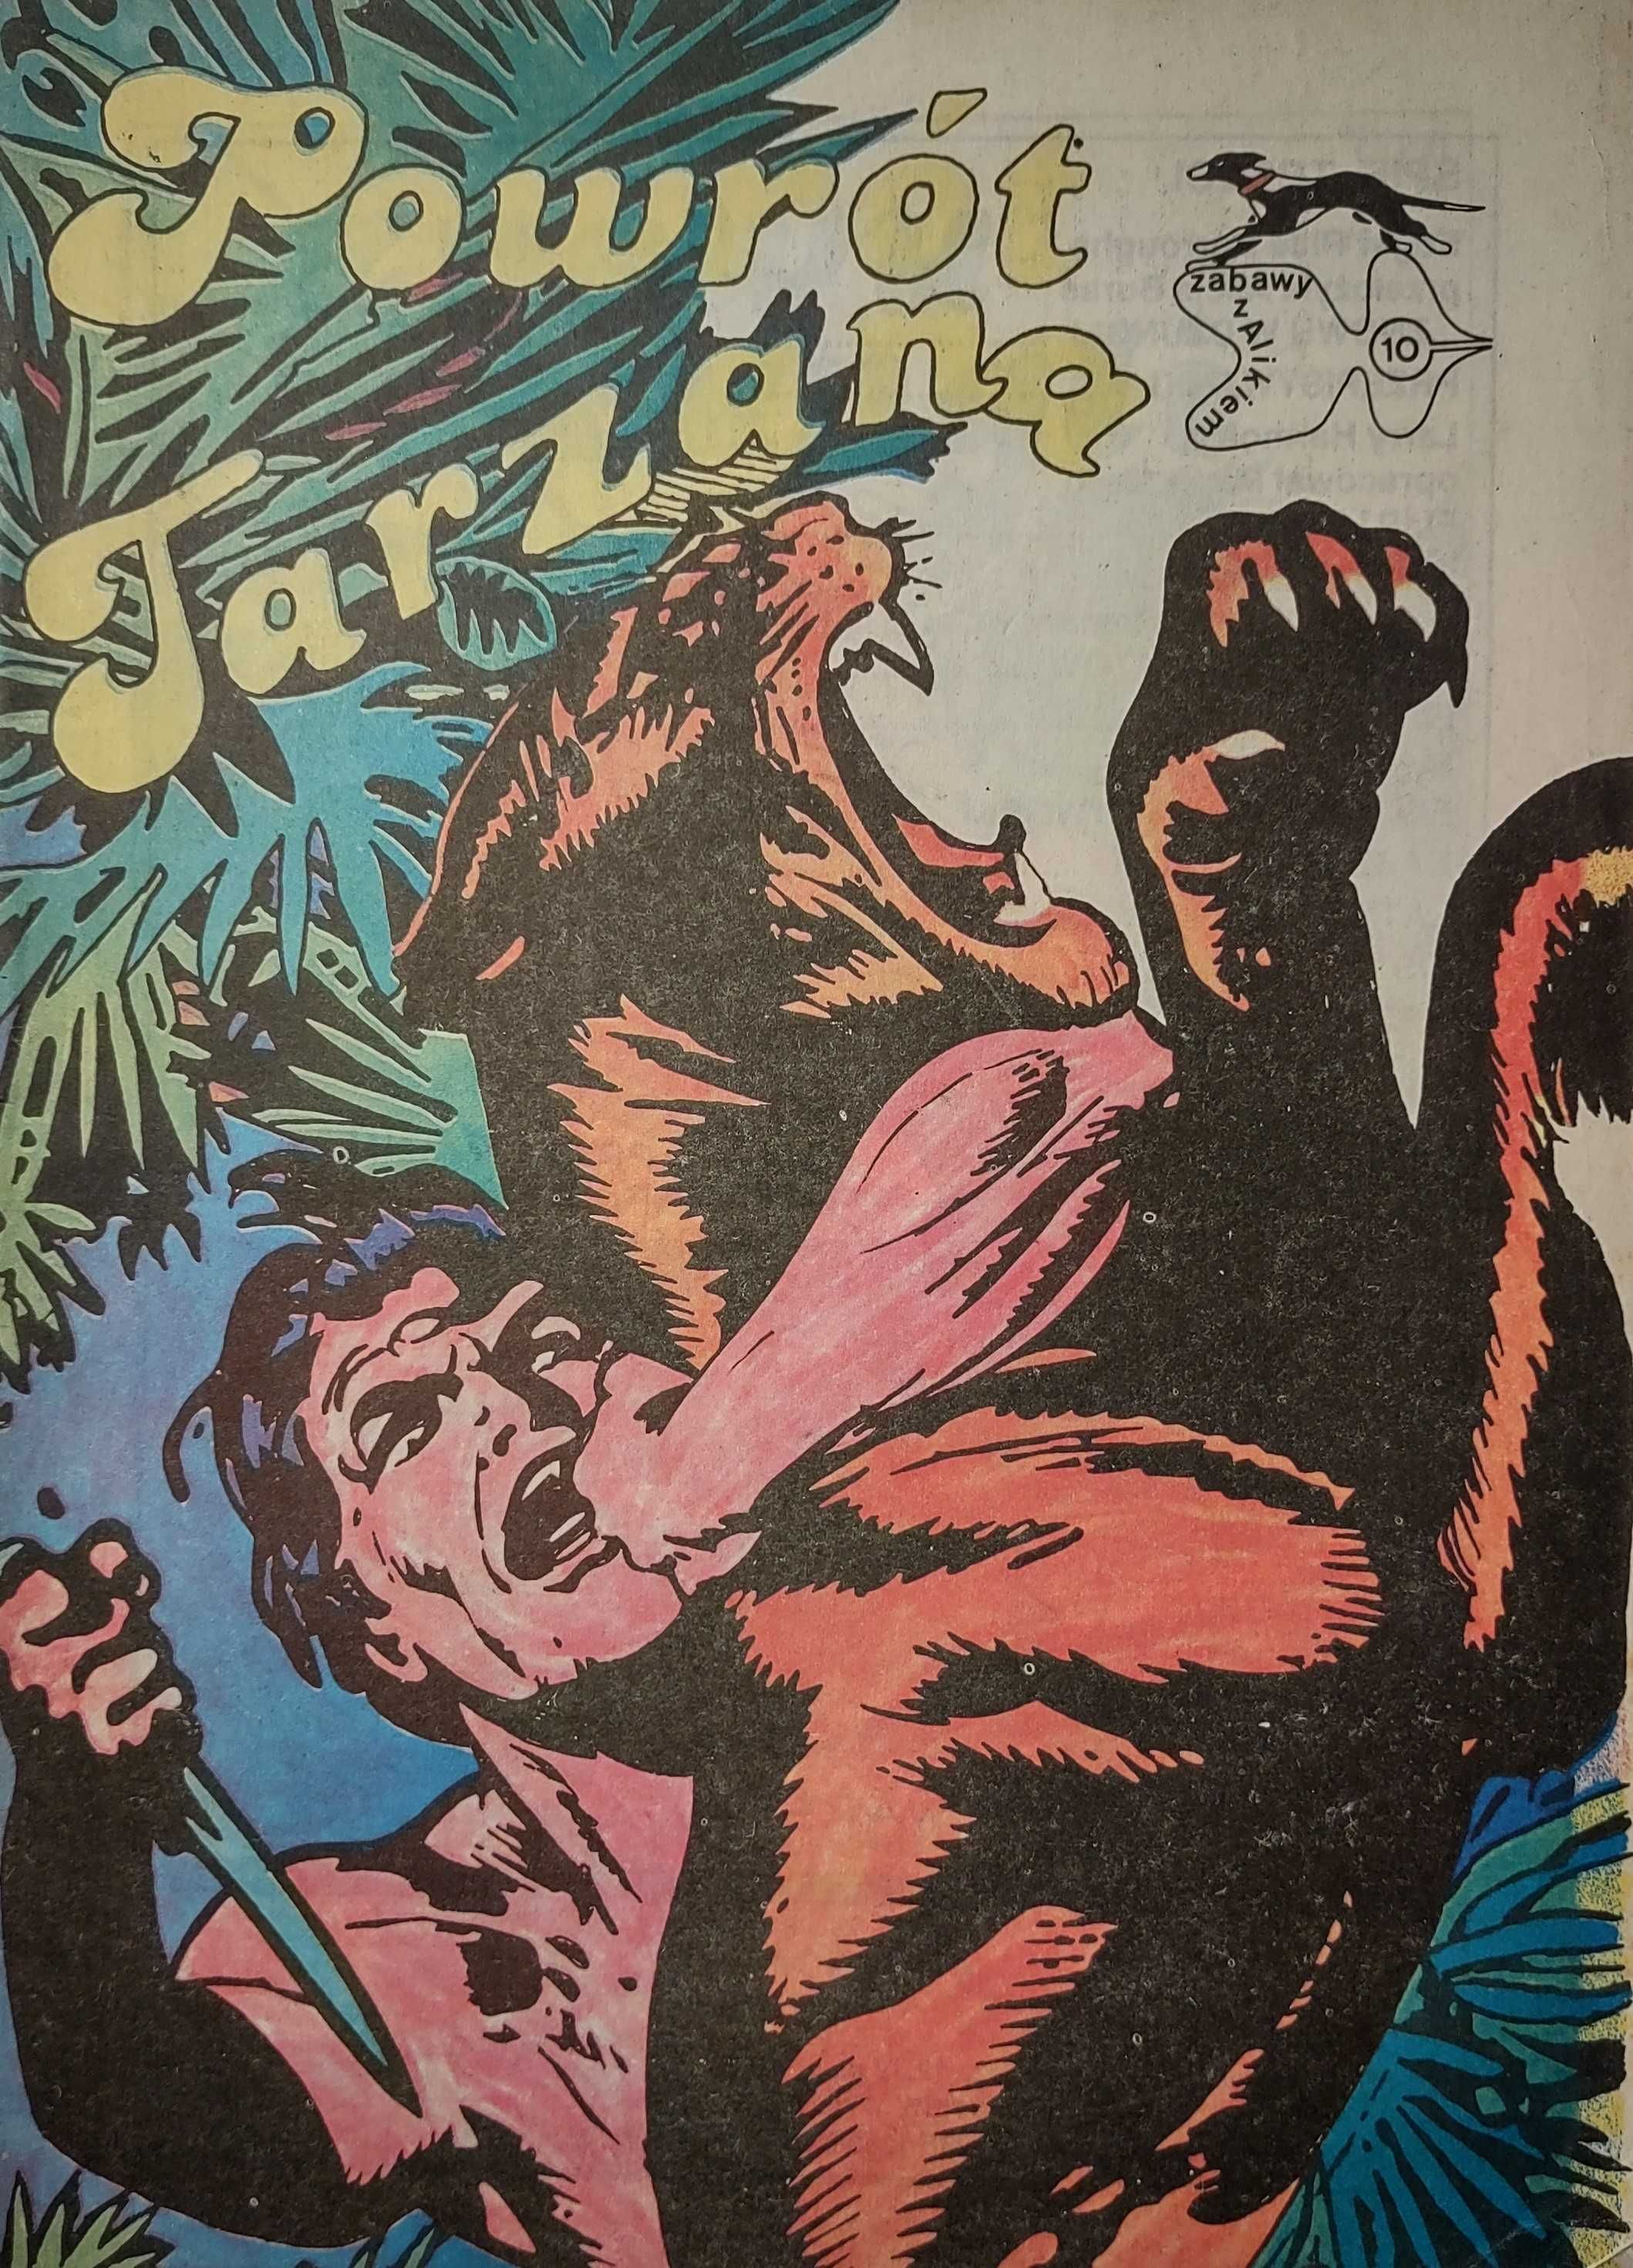 Powrót Tarzana Zabawy z alikiem